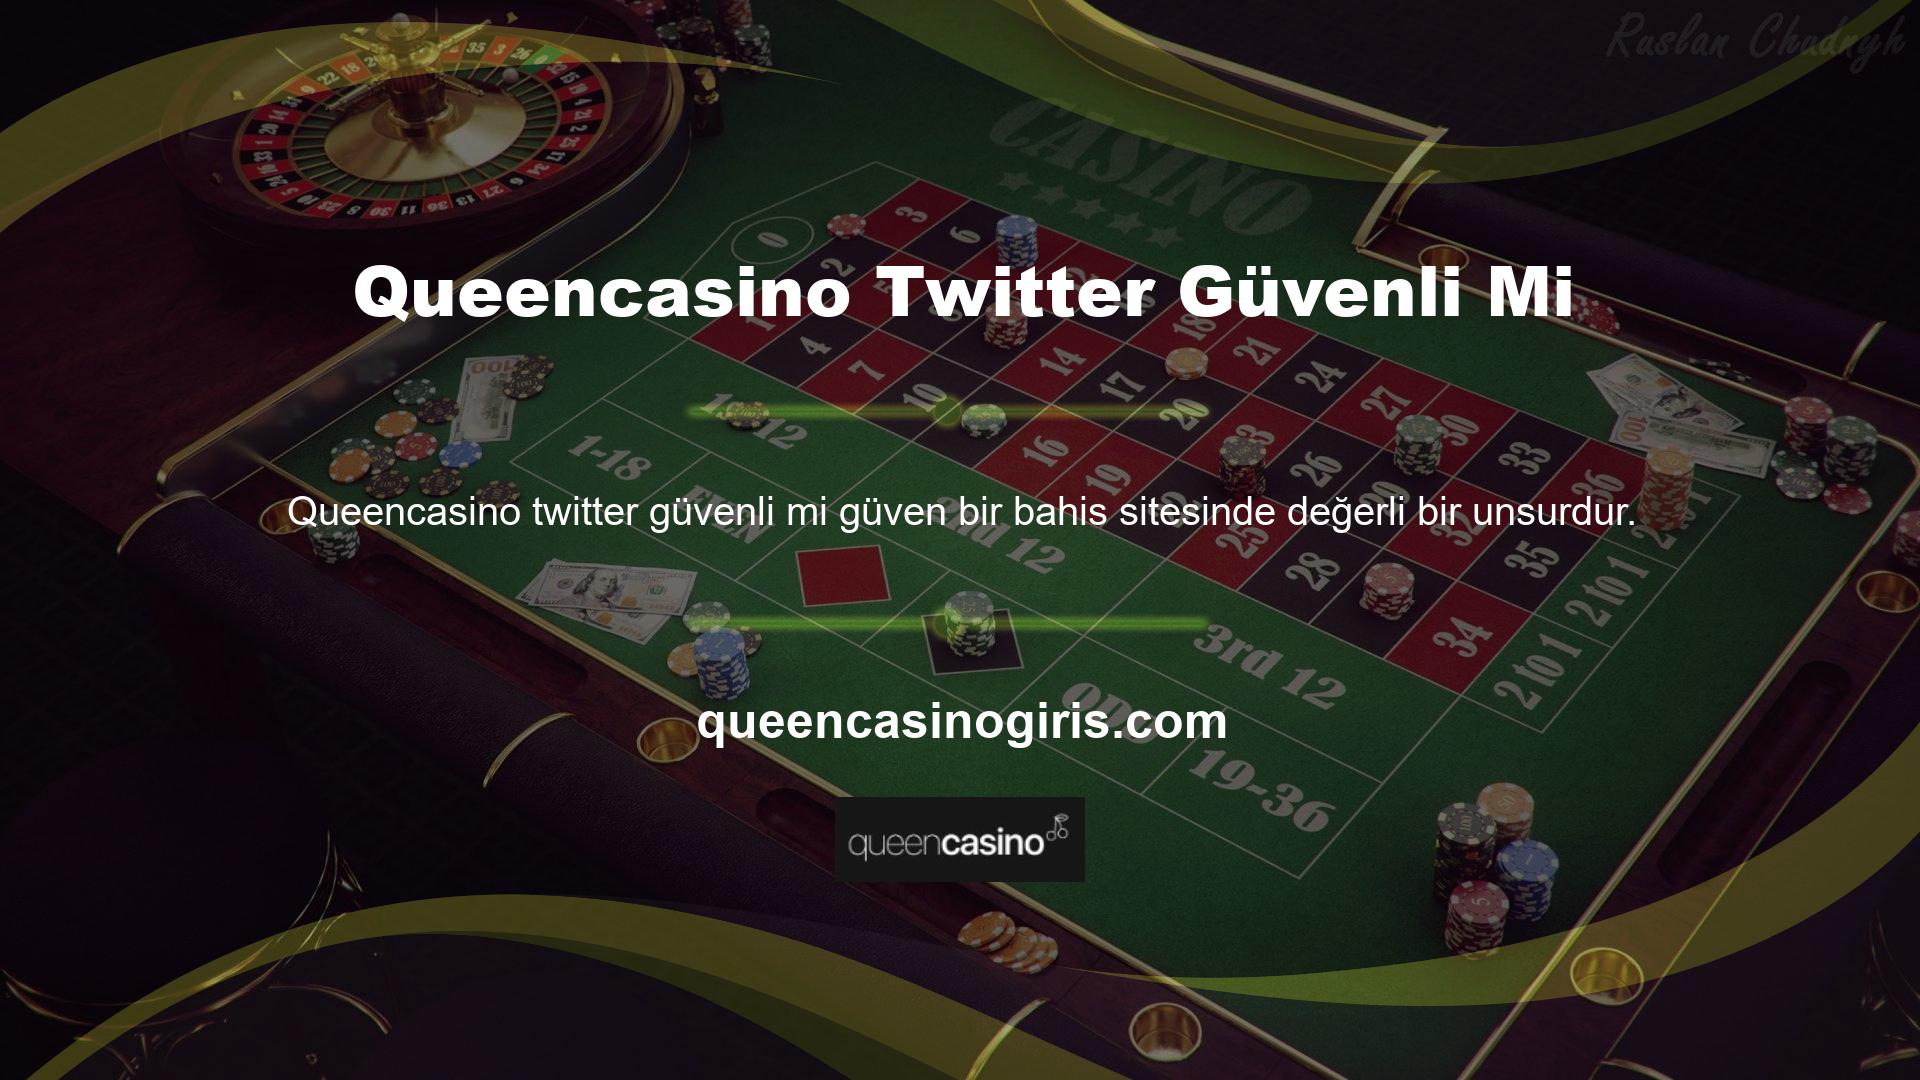 Bu bakımdan oyun Queencasino Twitter'da daha güvenli oynanıyor